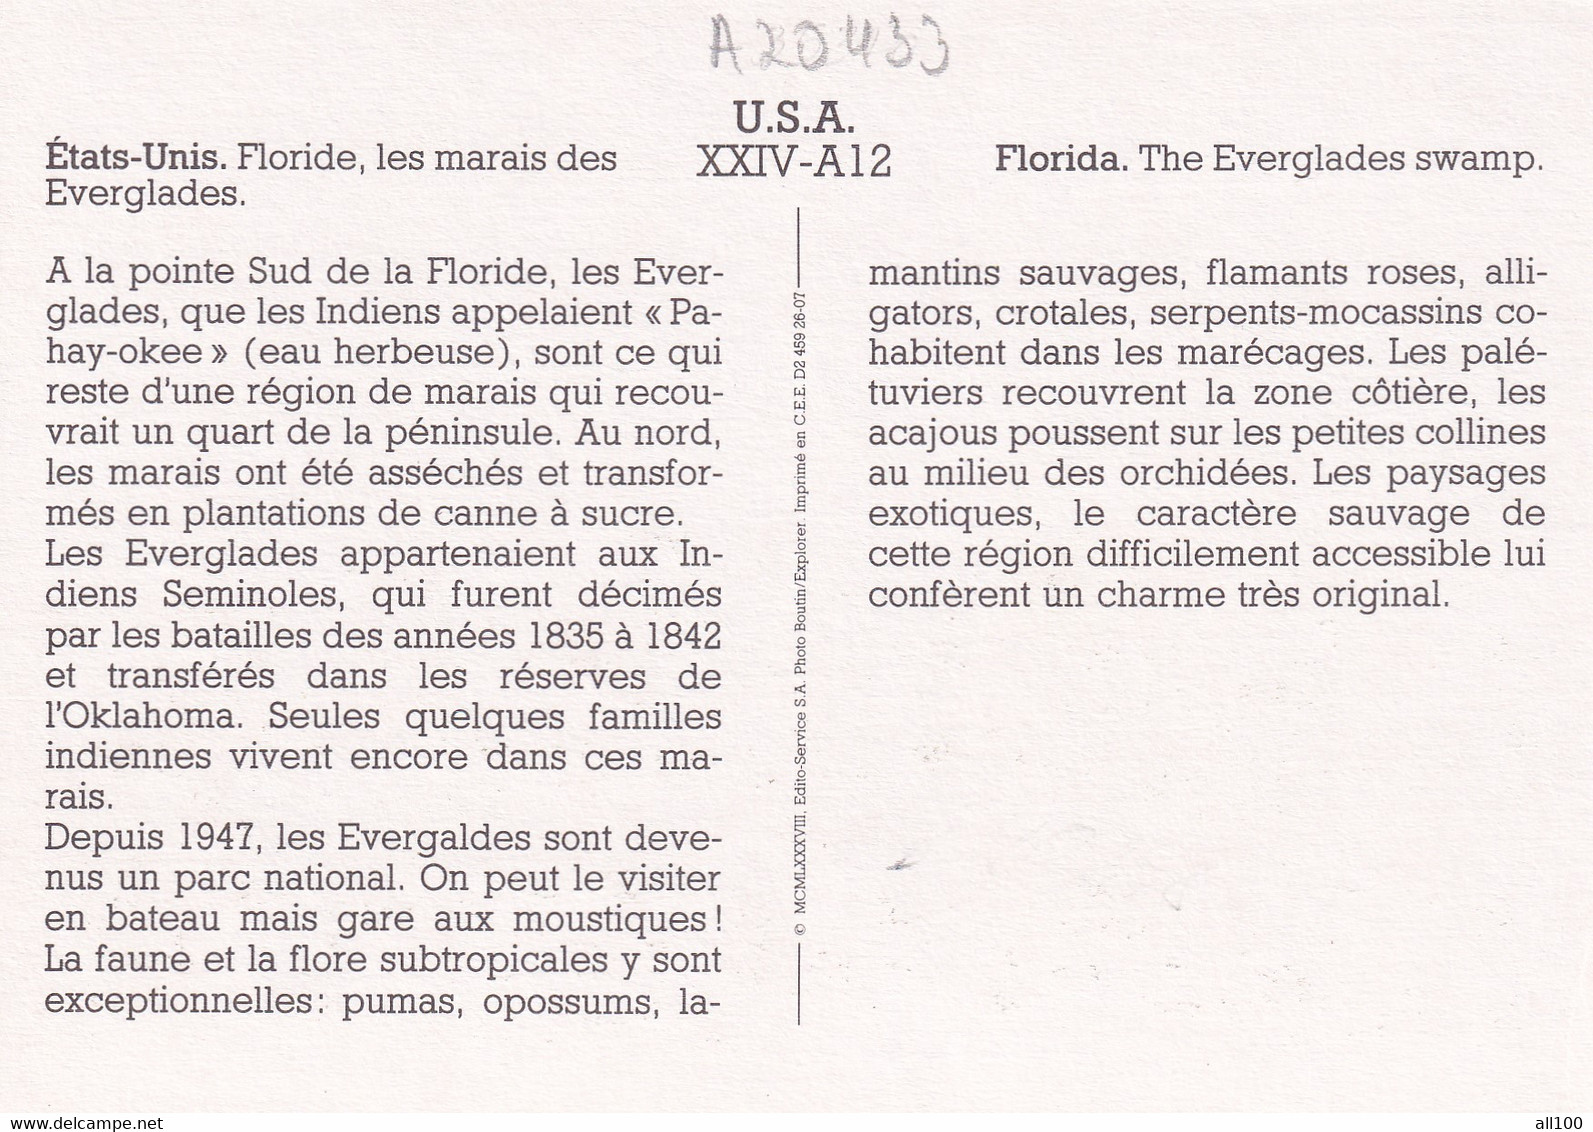 A20433 - FLORIDA THE EVERGLADES SWAMP LES MARAIS DES EVERGLADES NATIONAL PARK USA UNITED STATES OF AMERICA - USA Nationale Parken